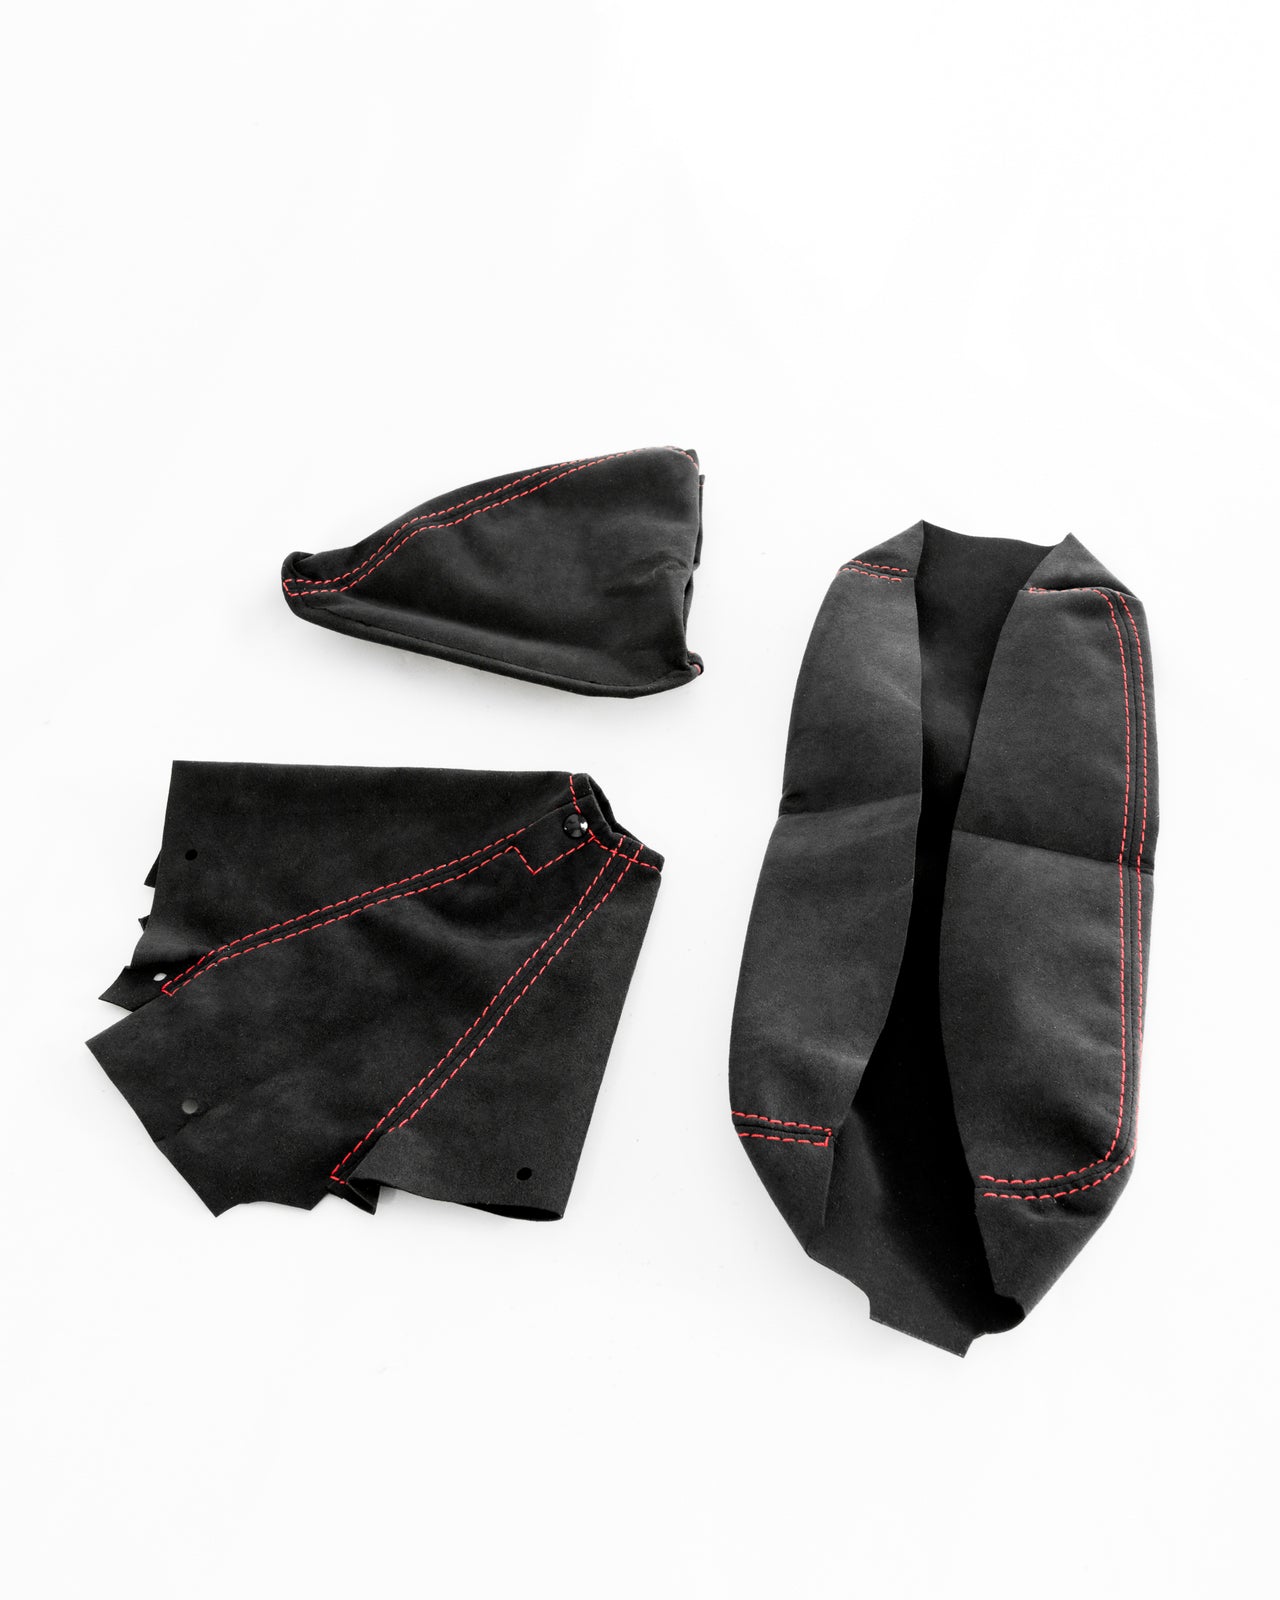 MINE'S Alcantara Boot & Armrest Kit for Nissan Skyline GT-R R32/R33/R34